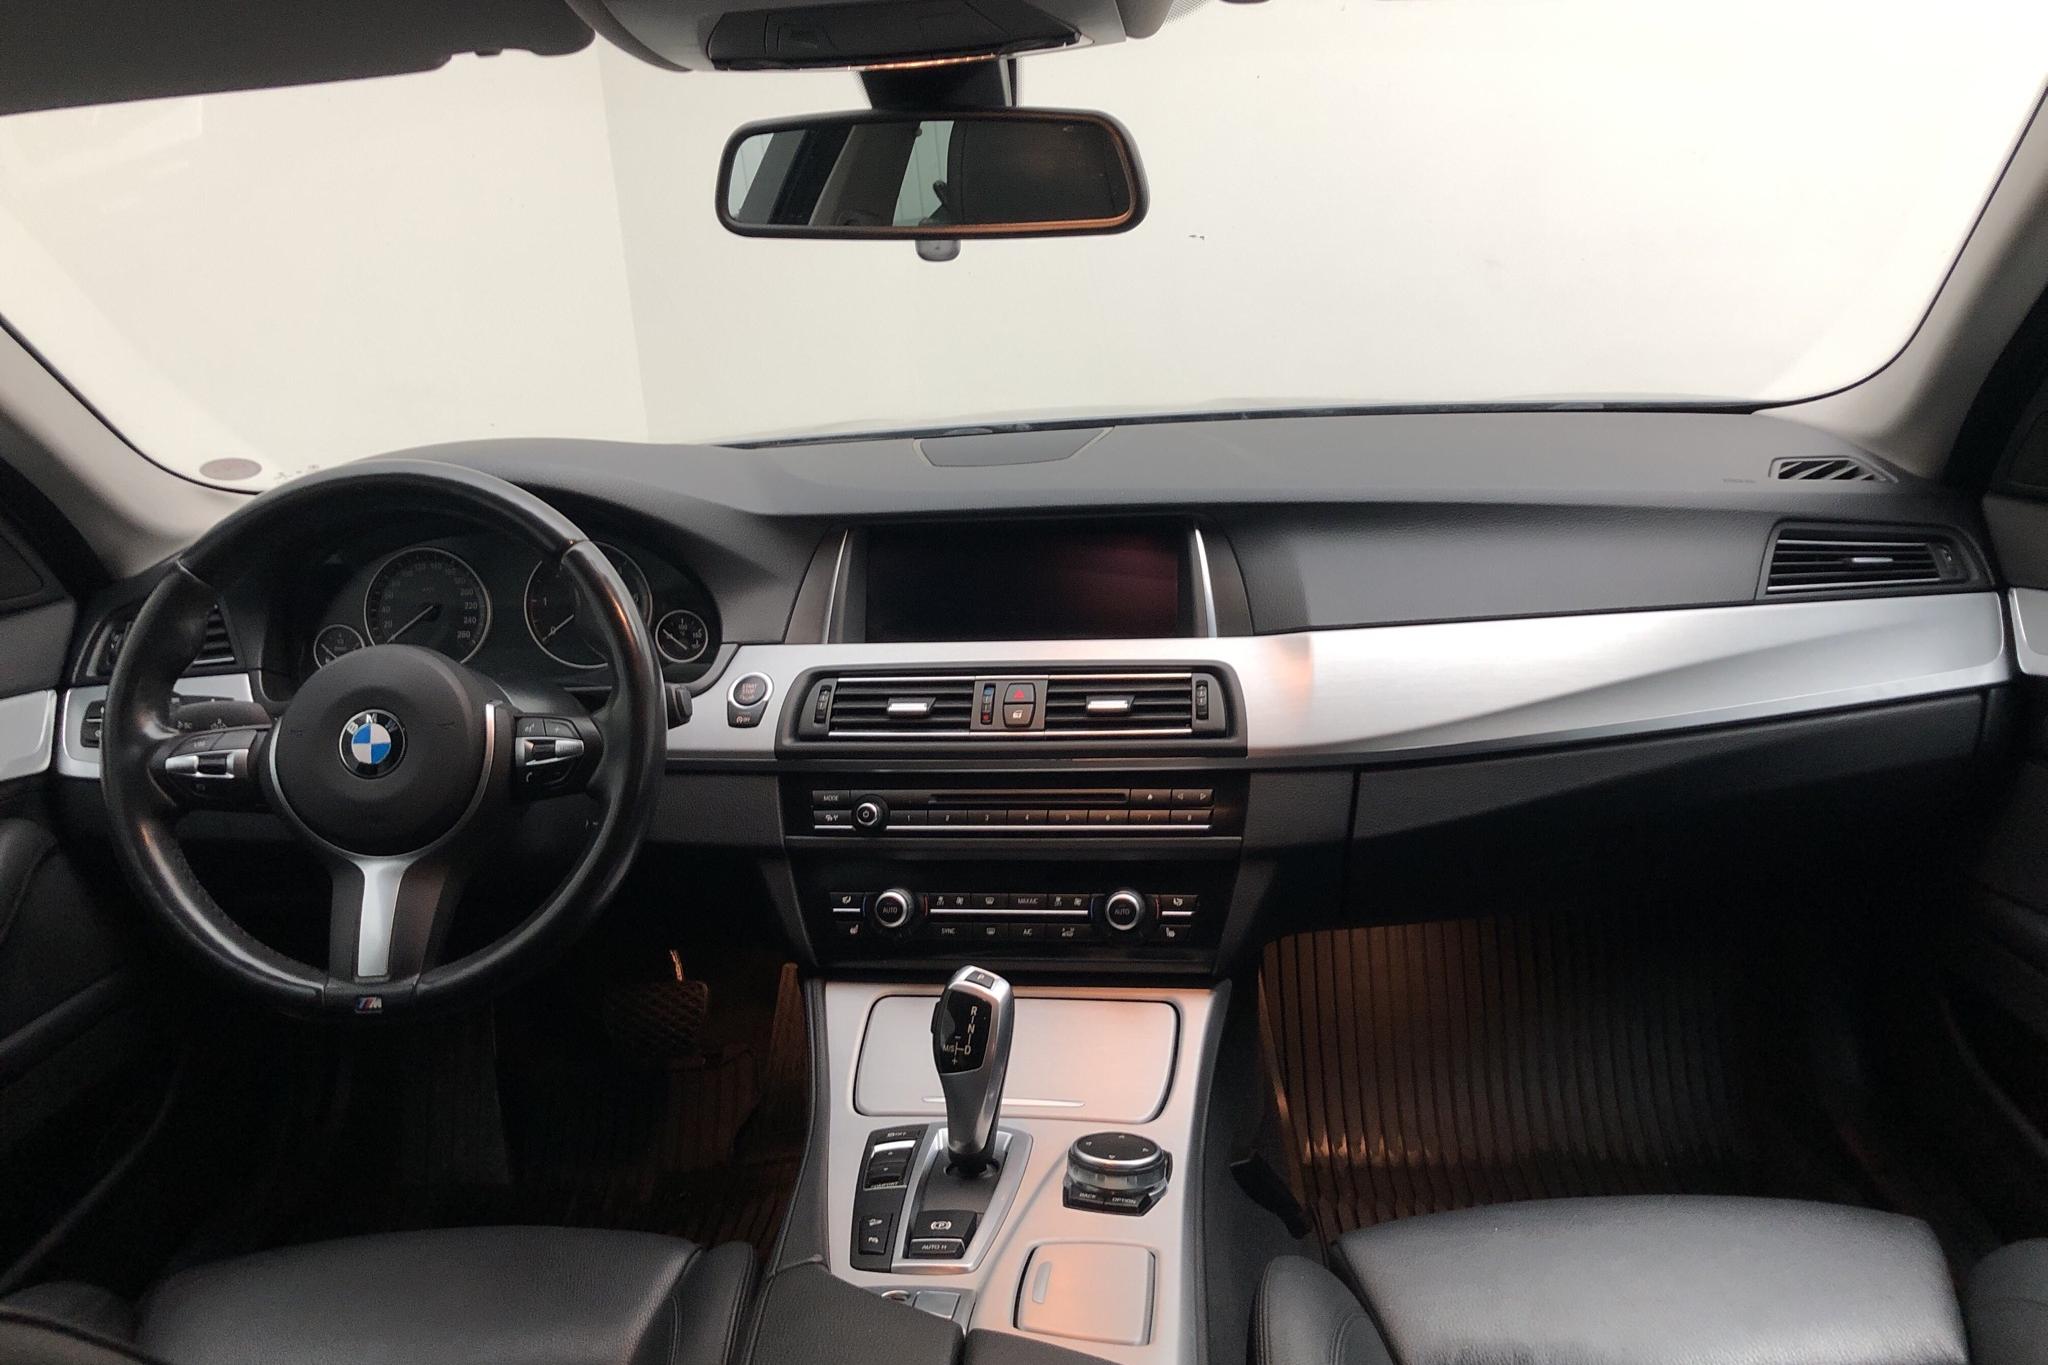 BMW 520d xDrive Touring, F11 (190hk) - 76 820 km - Automatic - gray - 2017